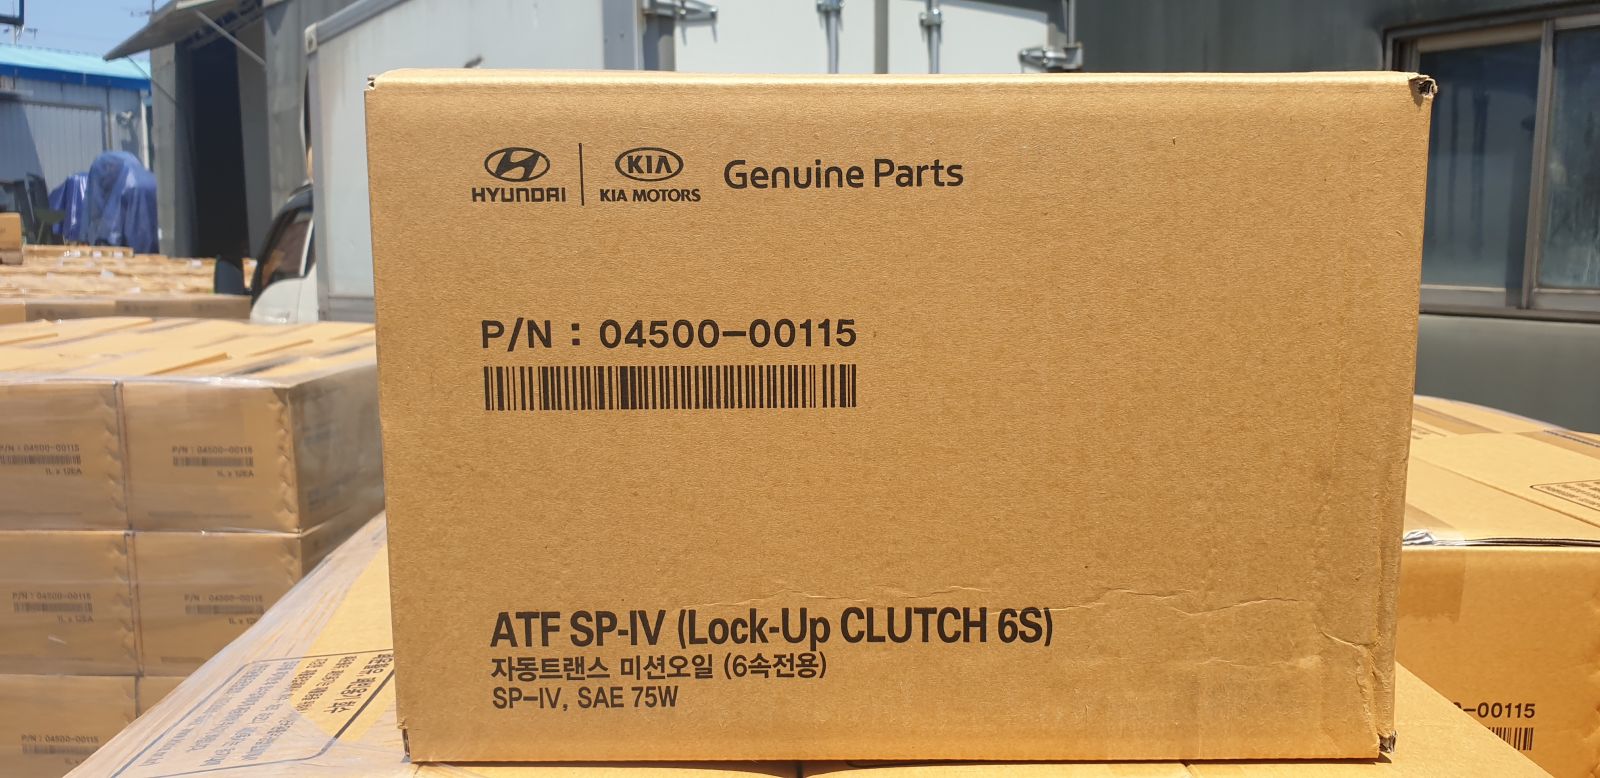 Поменялась упаковка. Оригинальная упаковка Hyundai оригинал. Упаковка Genuine Parts. Mobis коробка.